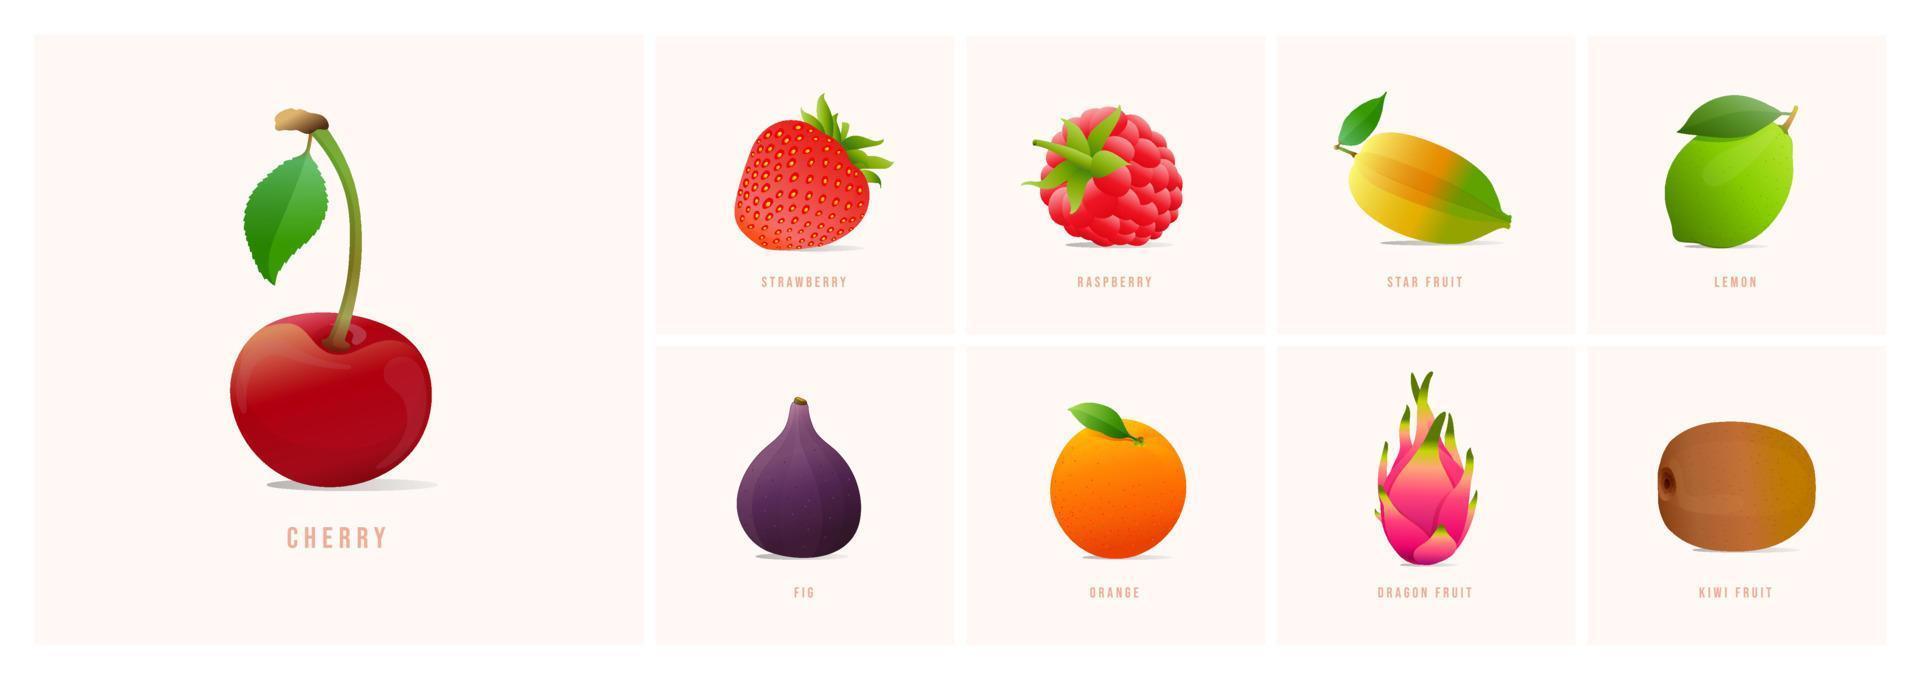 reeks van fruit, modern stijl vector illustraties. kers, aardbei, ster fruit, citroen, vijg, oranje, draak fruit, kiwi